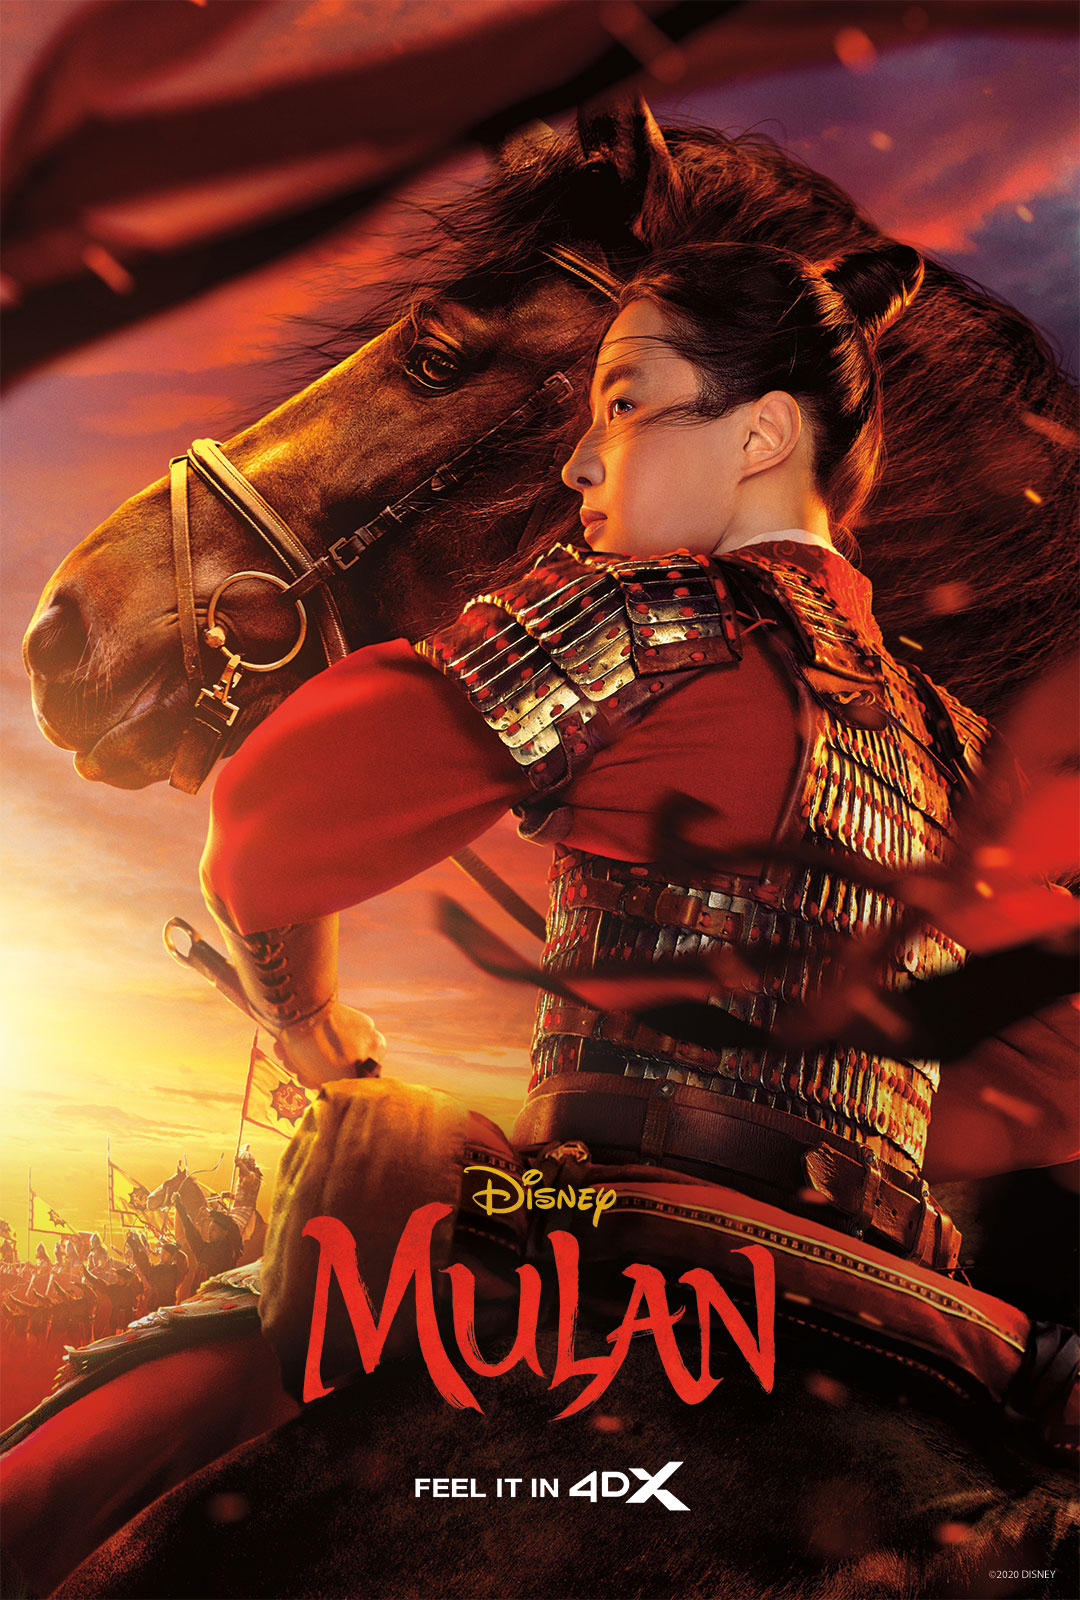 Mulan 4DX movie poster